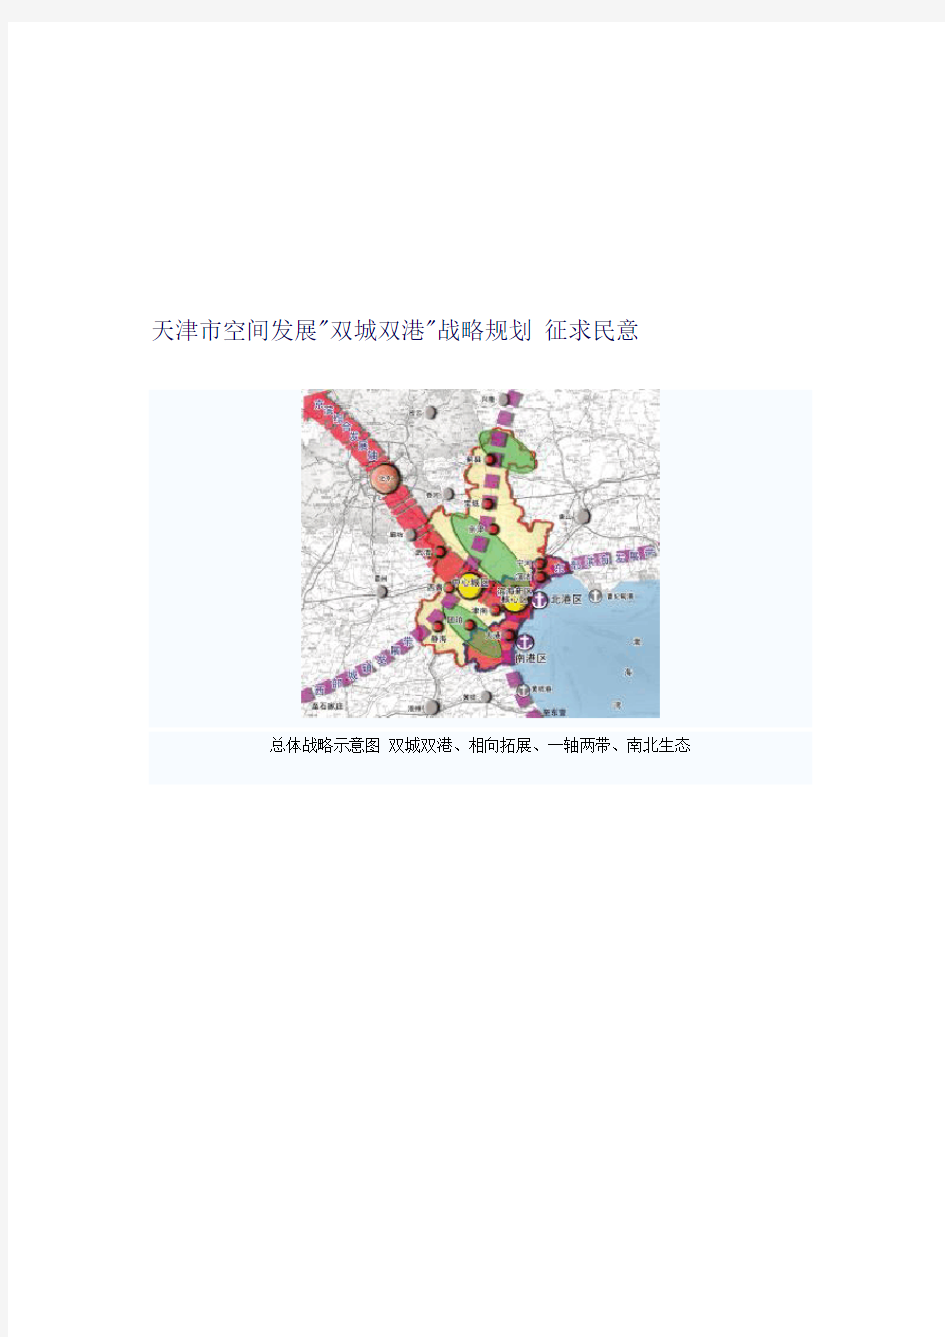 天津市空间发展双城双港战略整体规划